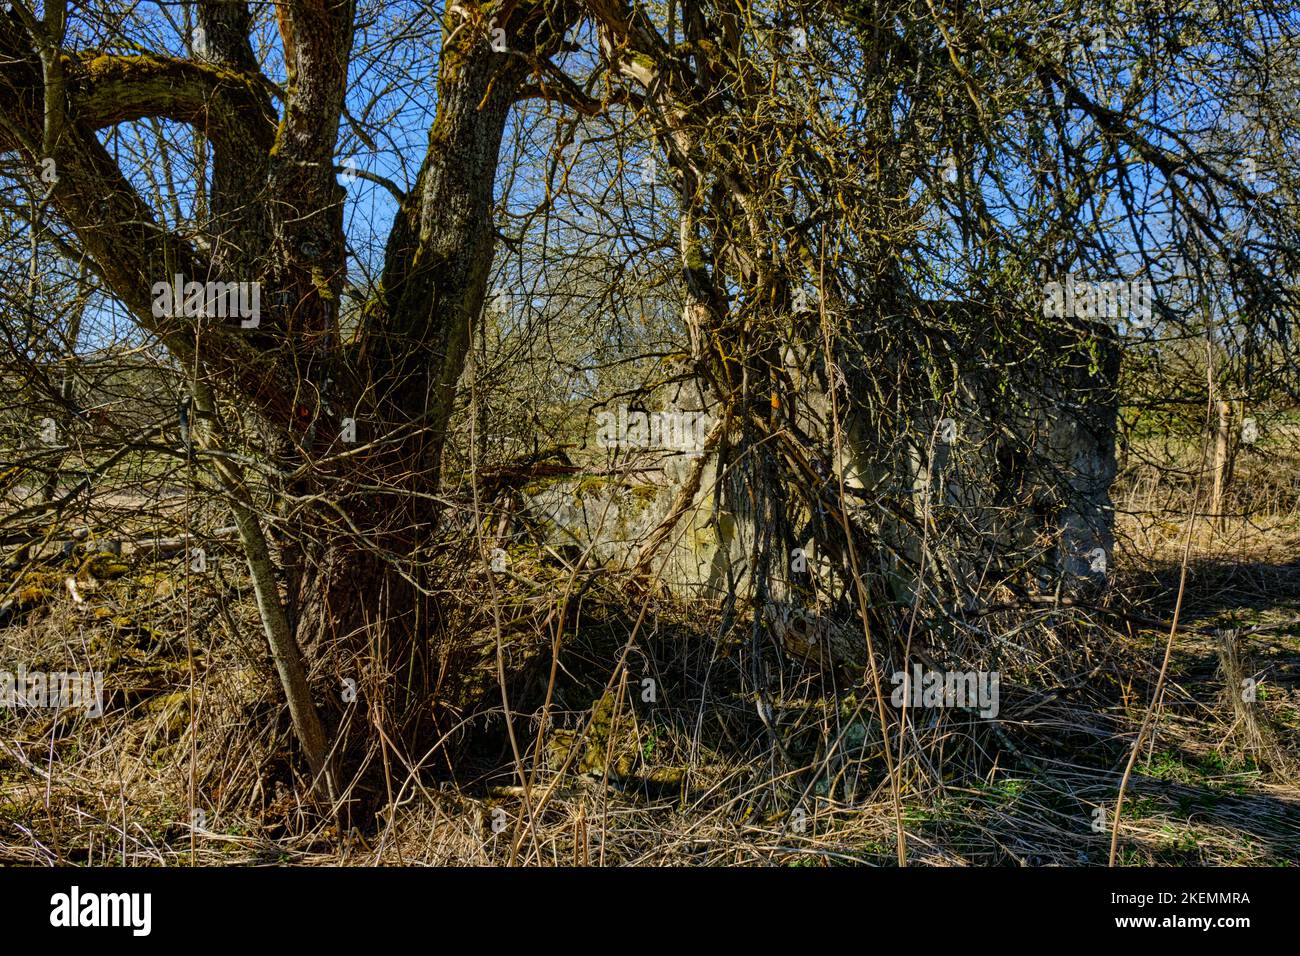 Wuchernde silvestre vegetation und verfallene Gebäudestrukturen, Wüstung Dorf Gruorn, ehemaliger Truppenübungsplatz Gutsbezirk Münsingen, Biosphärenreserva Foto de stock